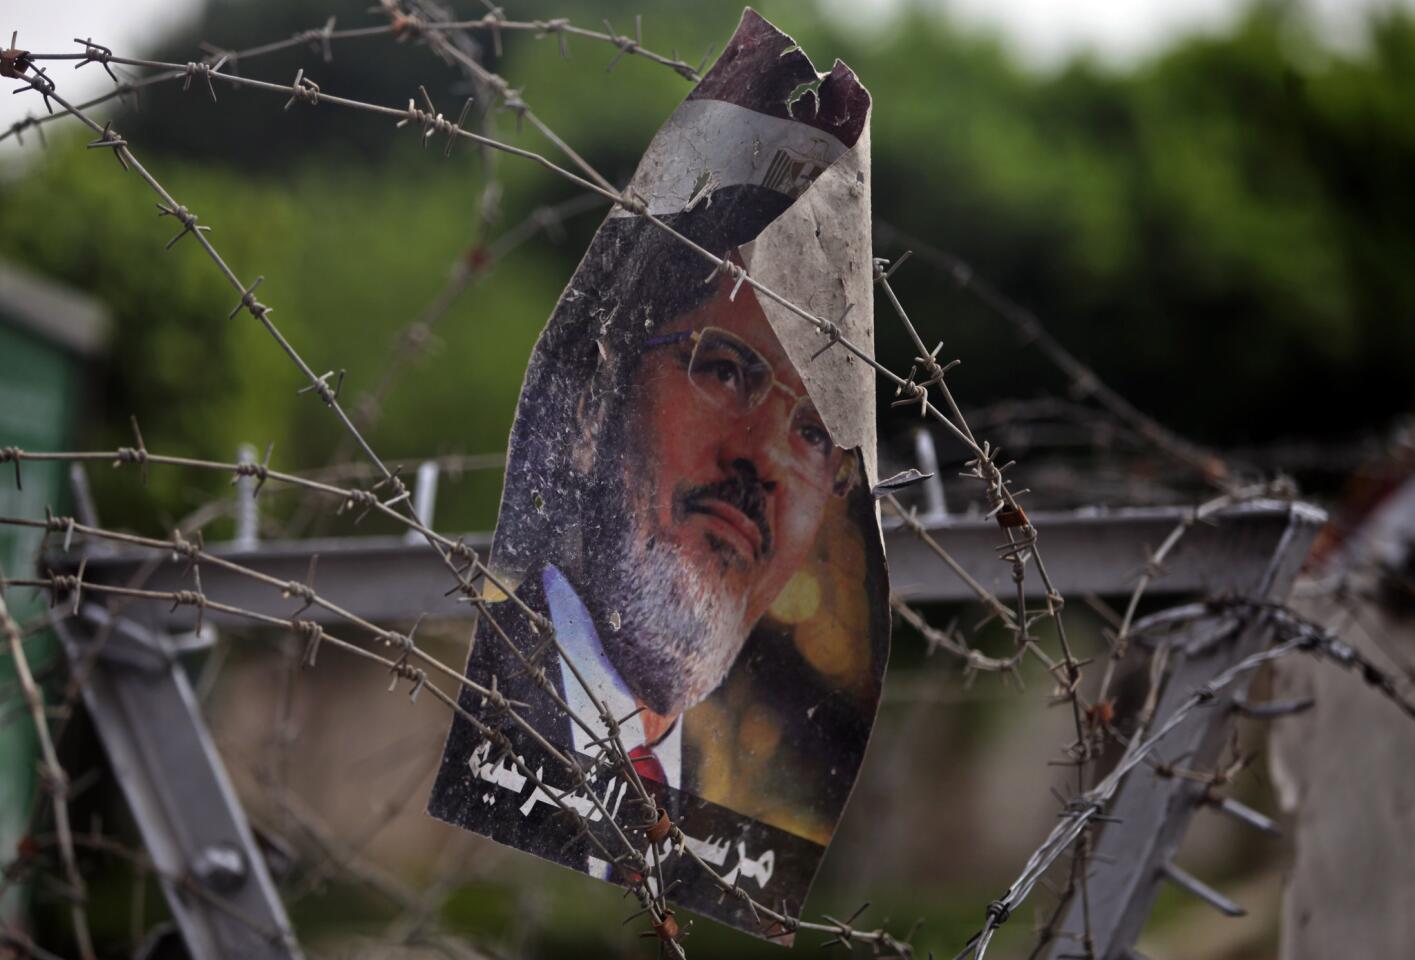 July 9: Poster of Morsi